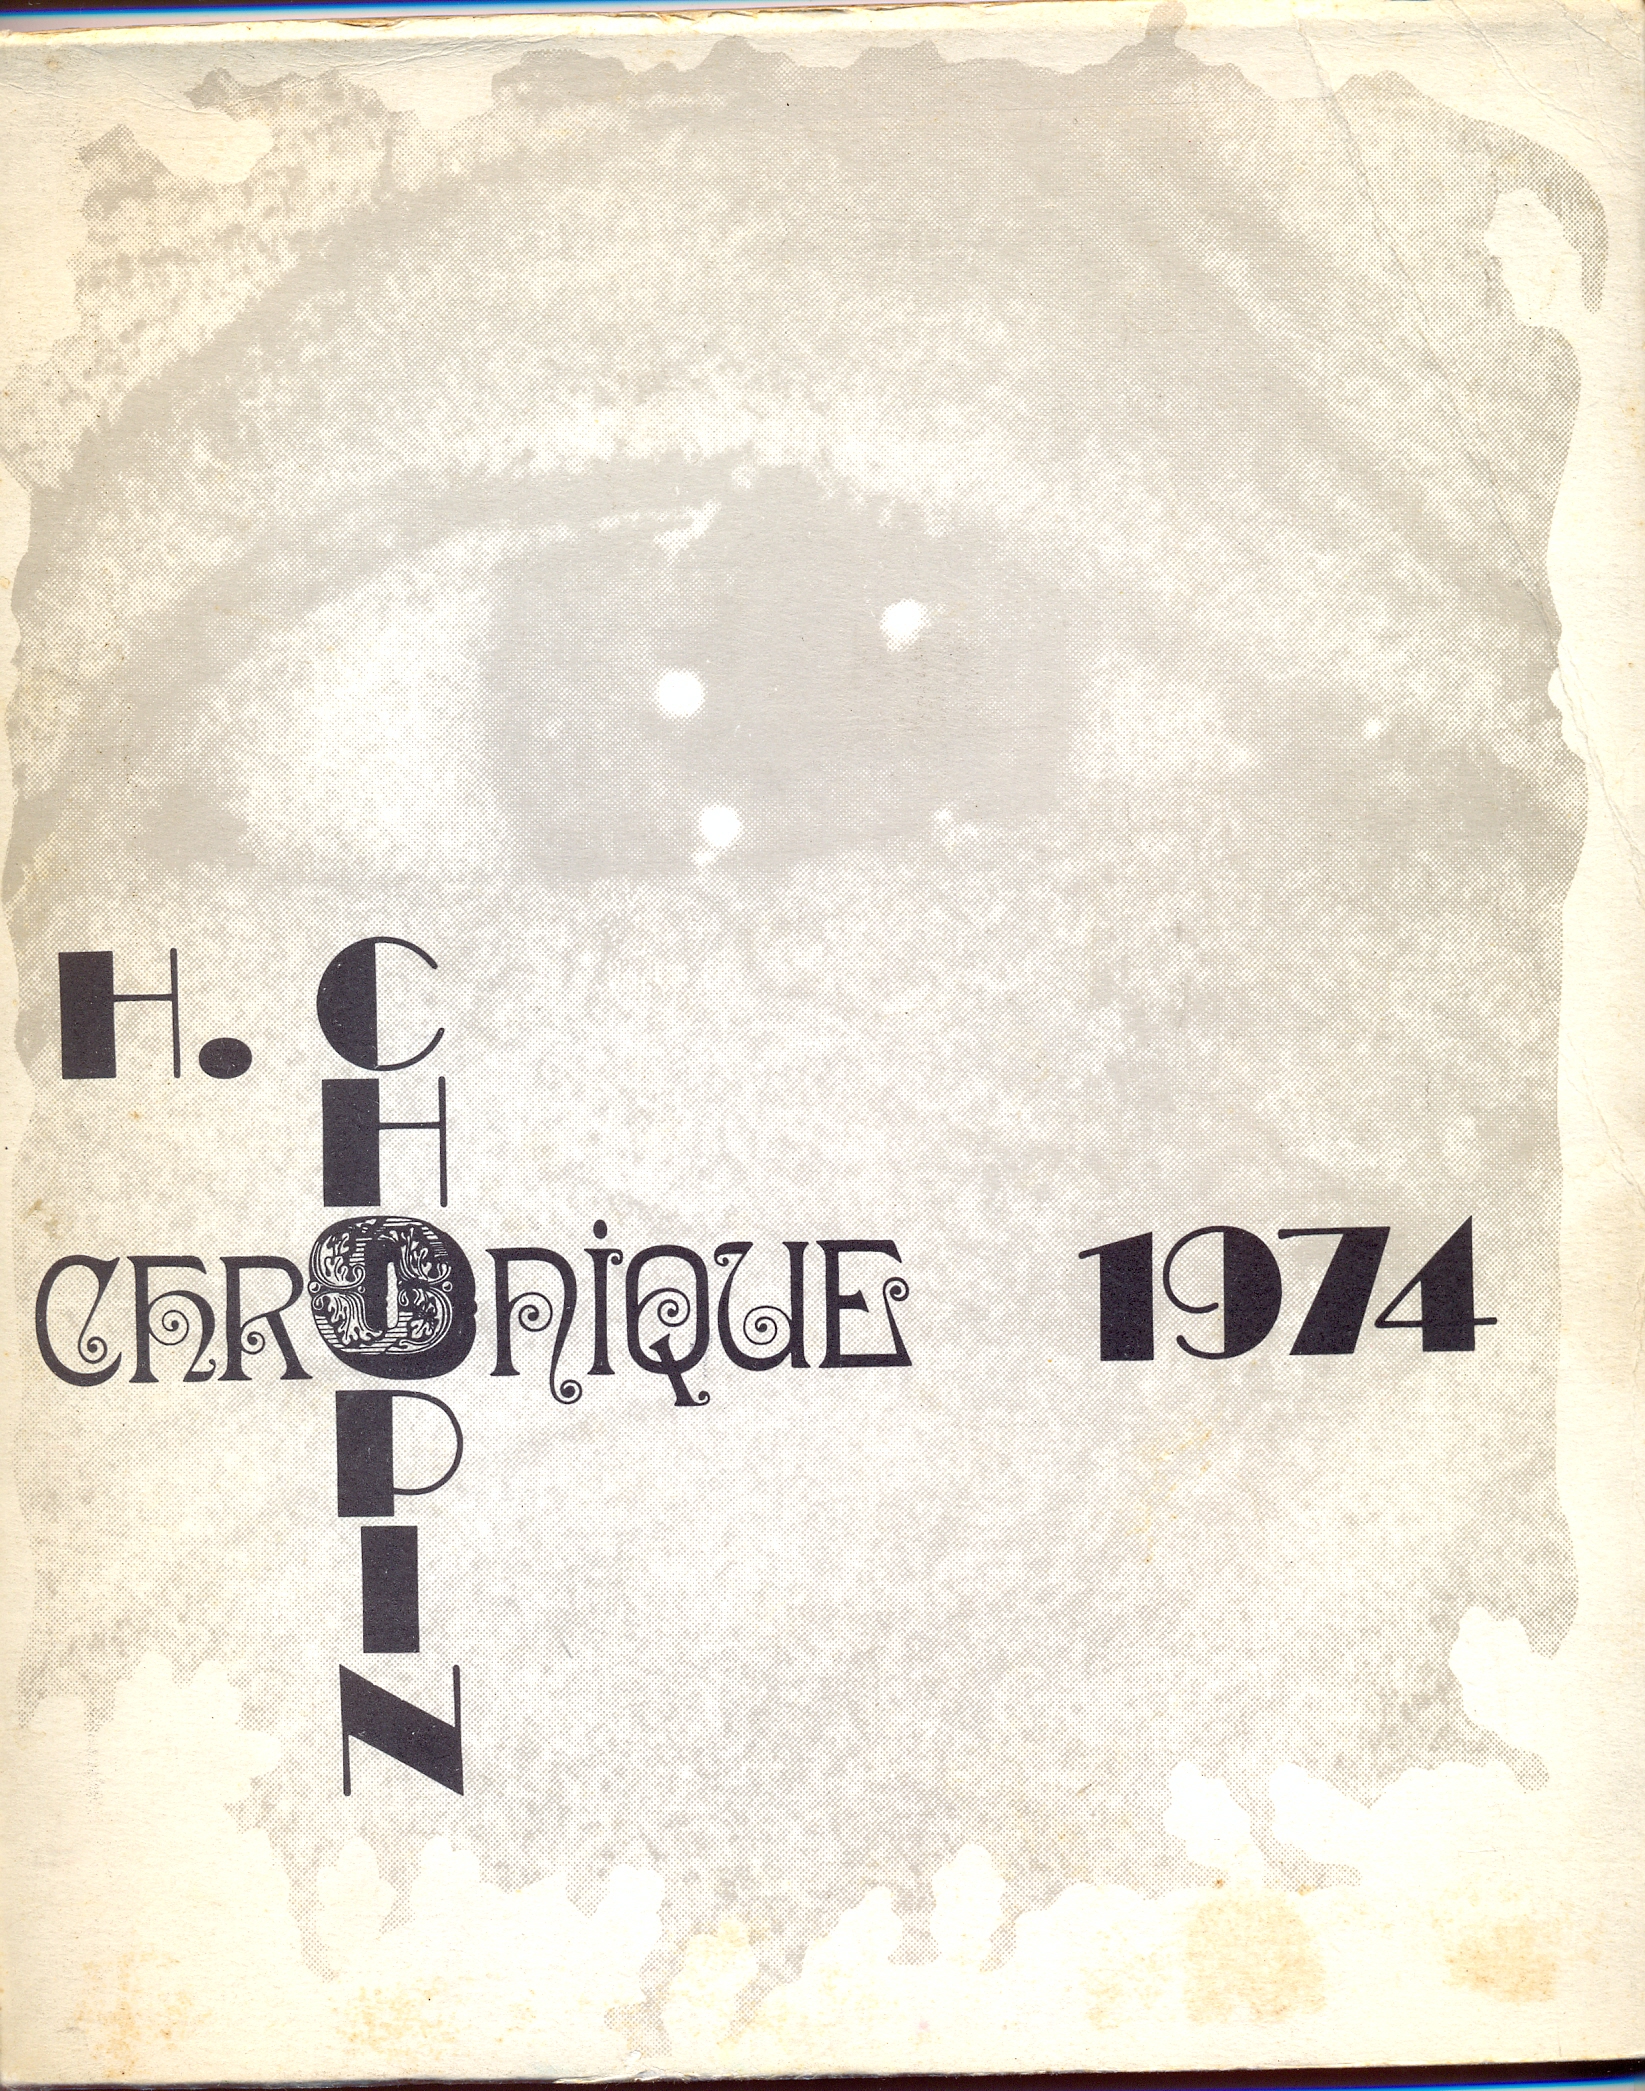 Chronique 1974